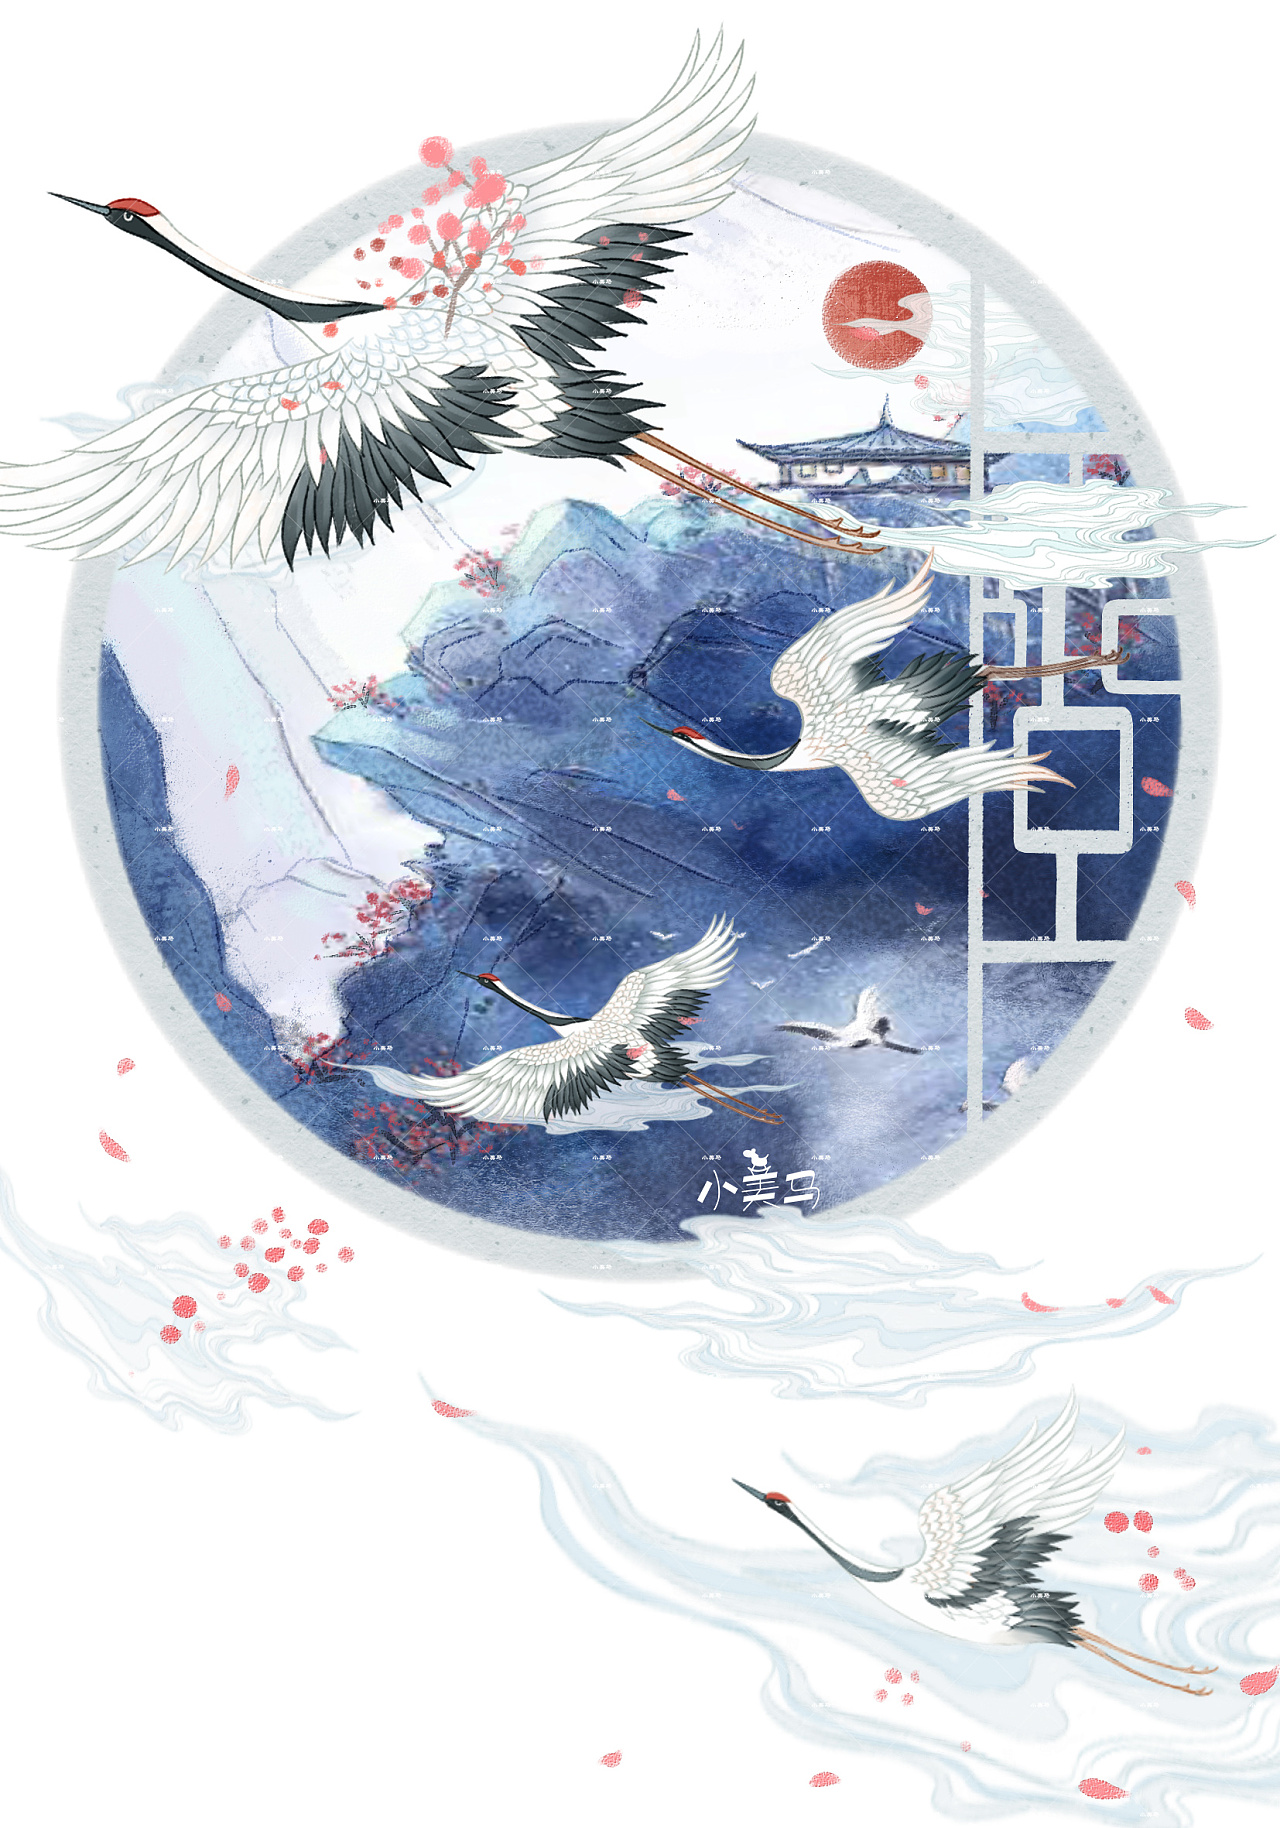 以来仙鹤这么受宠一套笔记本封面图来分享一弹古风仙鹤系列插画杭州